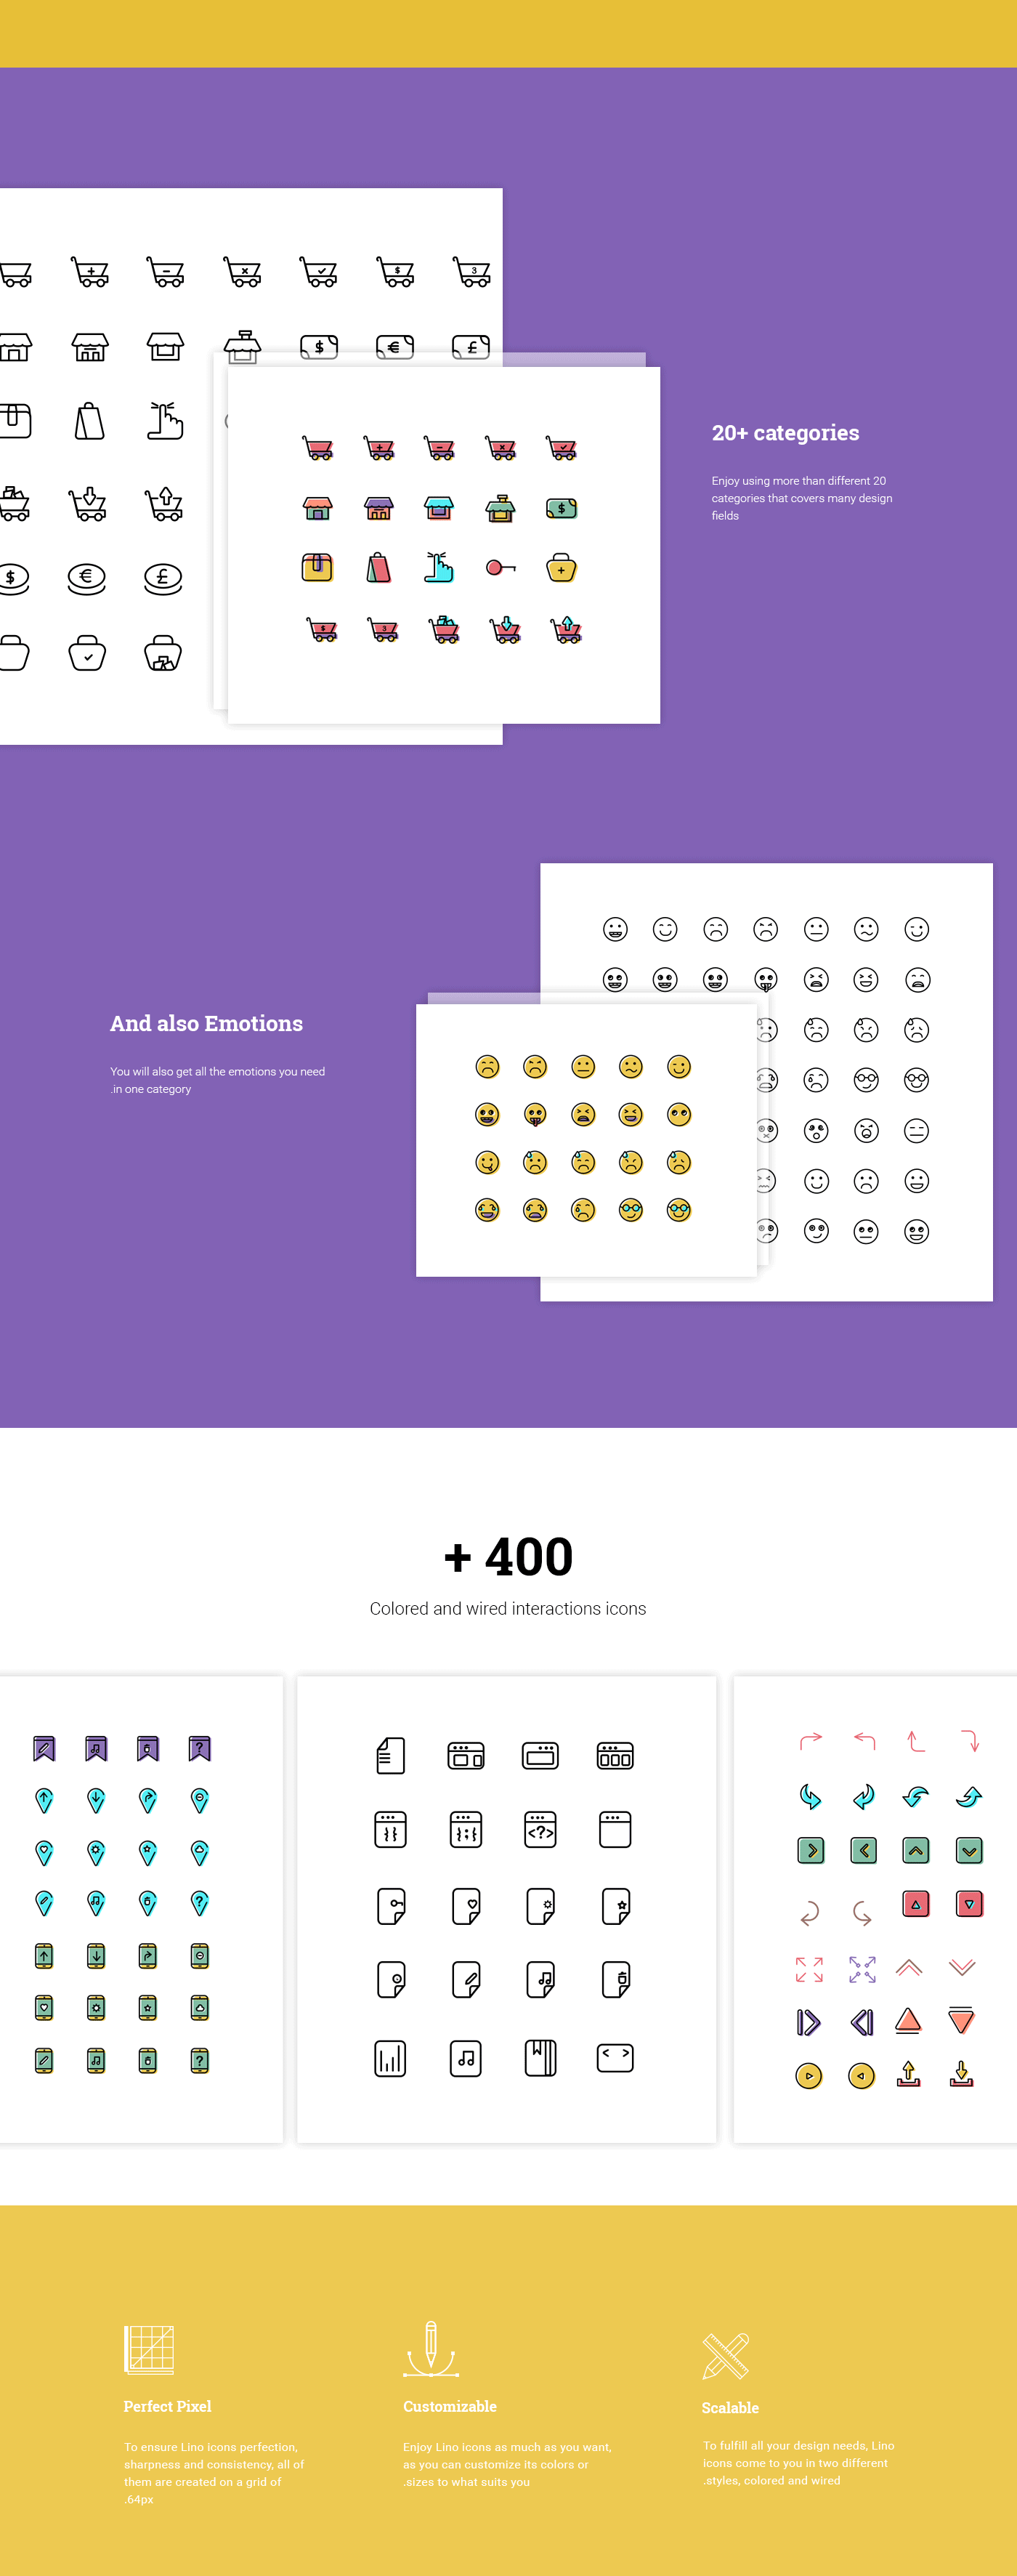 2000个各类专业图标大合集 [AI,PSD,Sketch,SVG]插图(2)